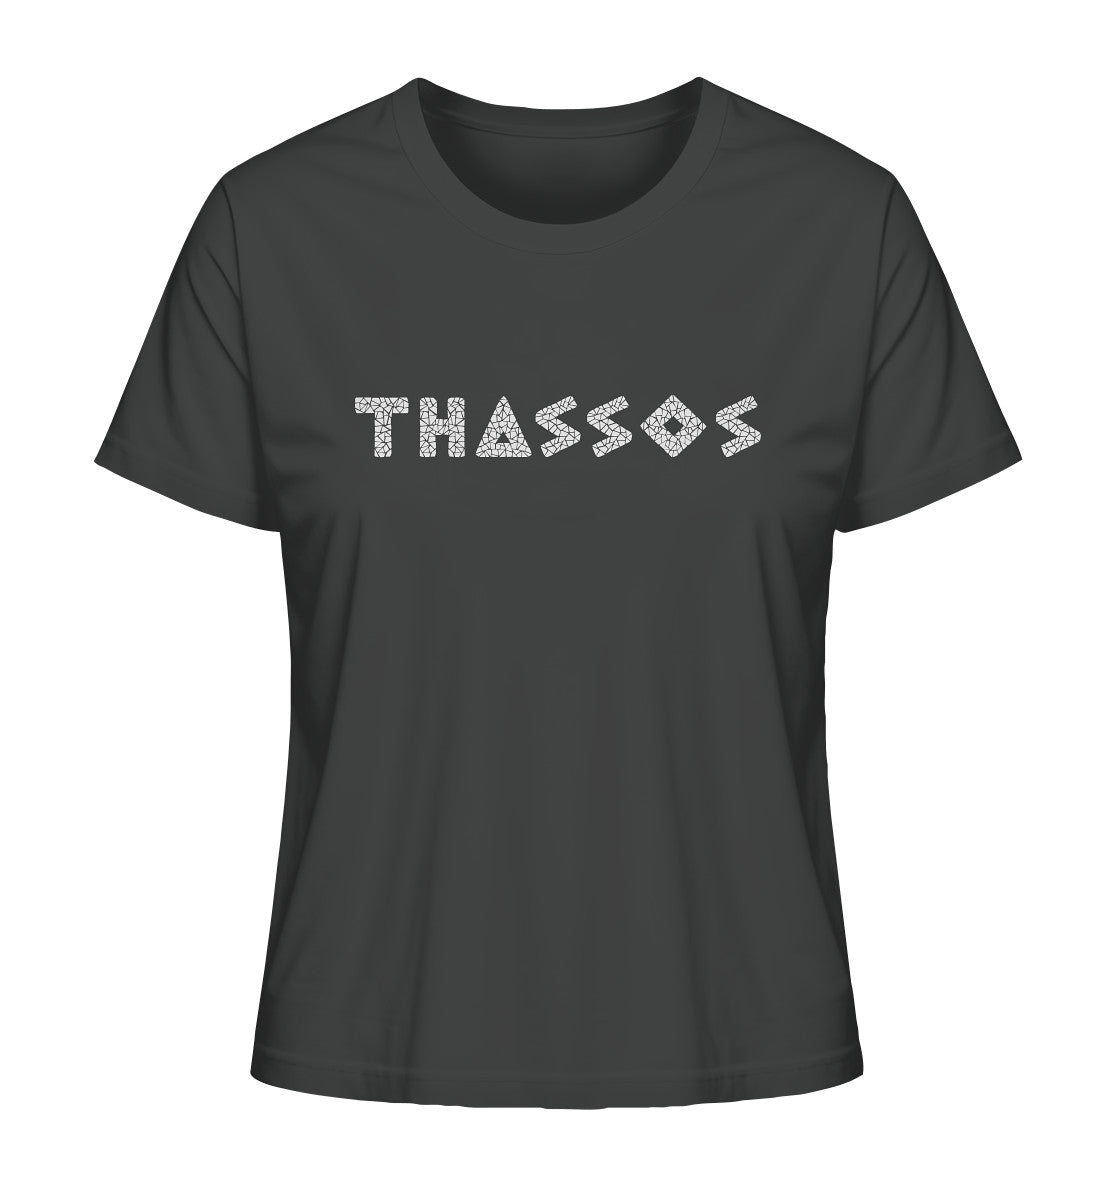 Thassos Mosaik - Ladies Organic Shirt